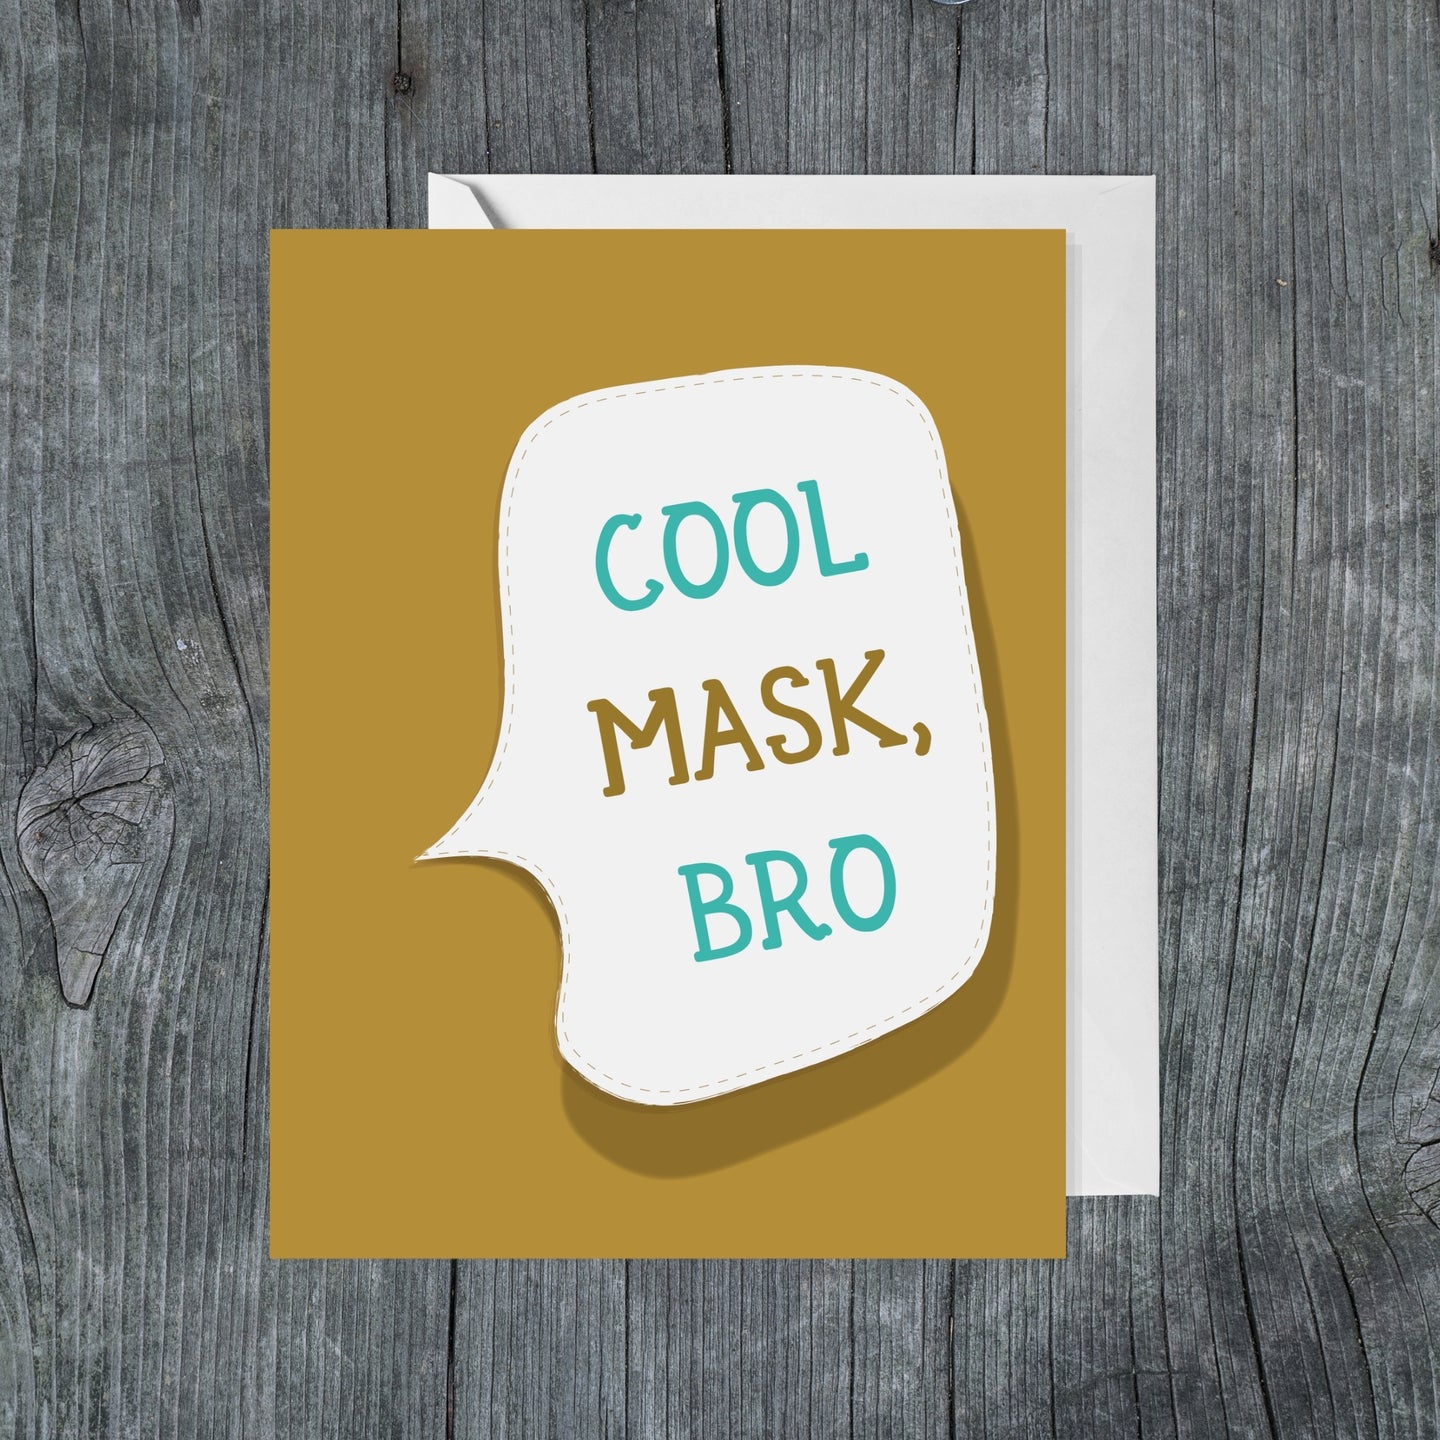 Cool Mask, Bro